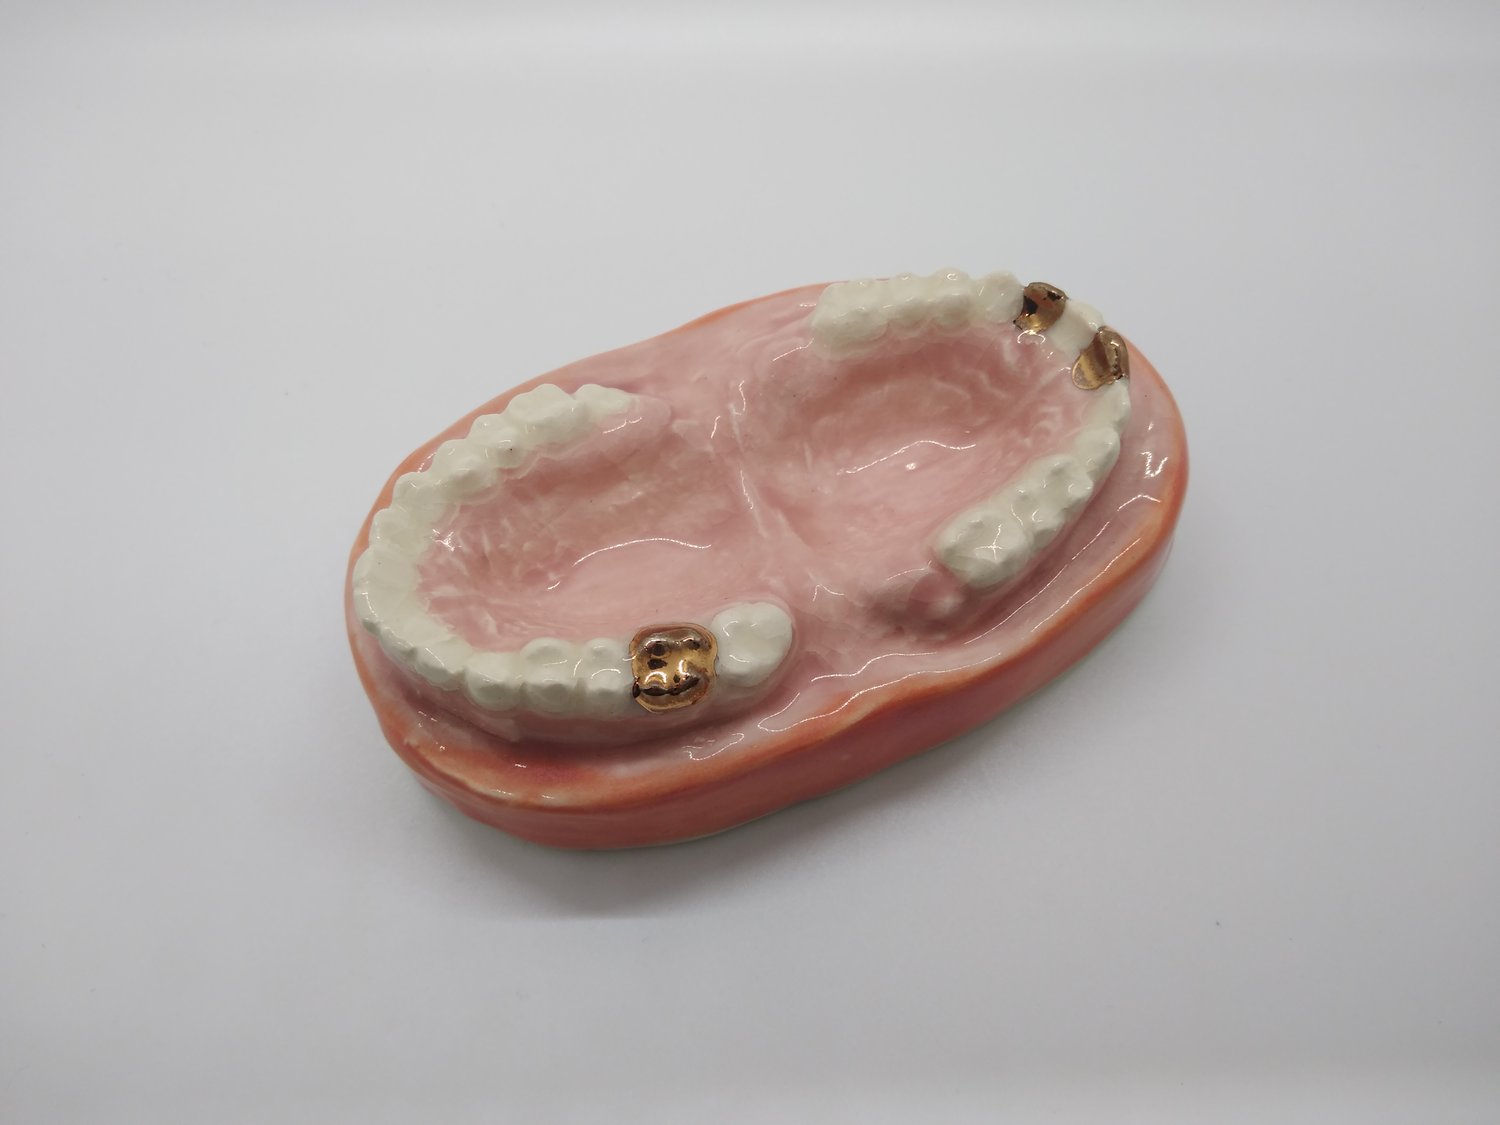 Image of Teeth Dish with Gold Teeth